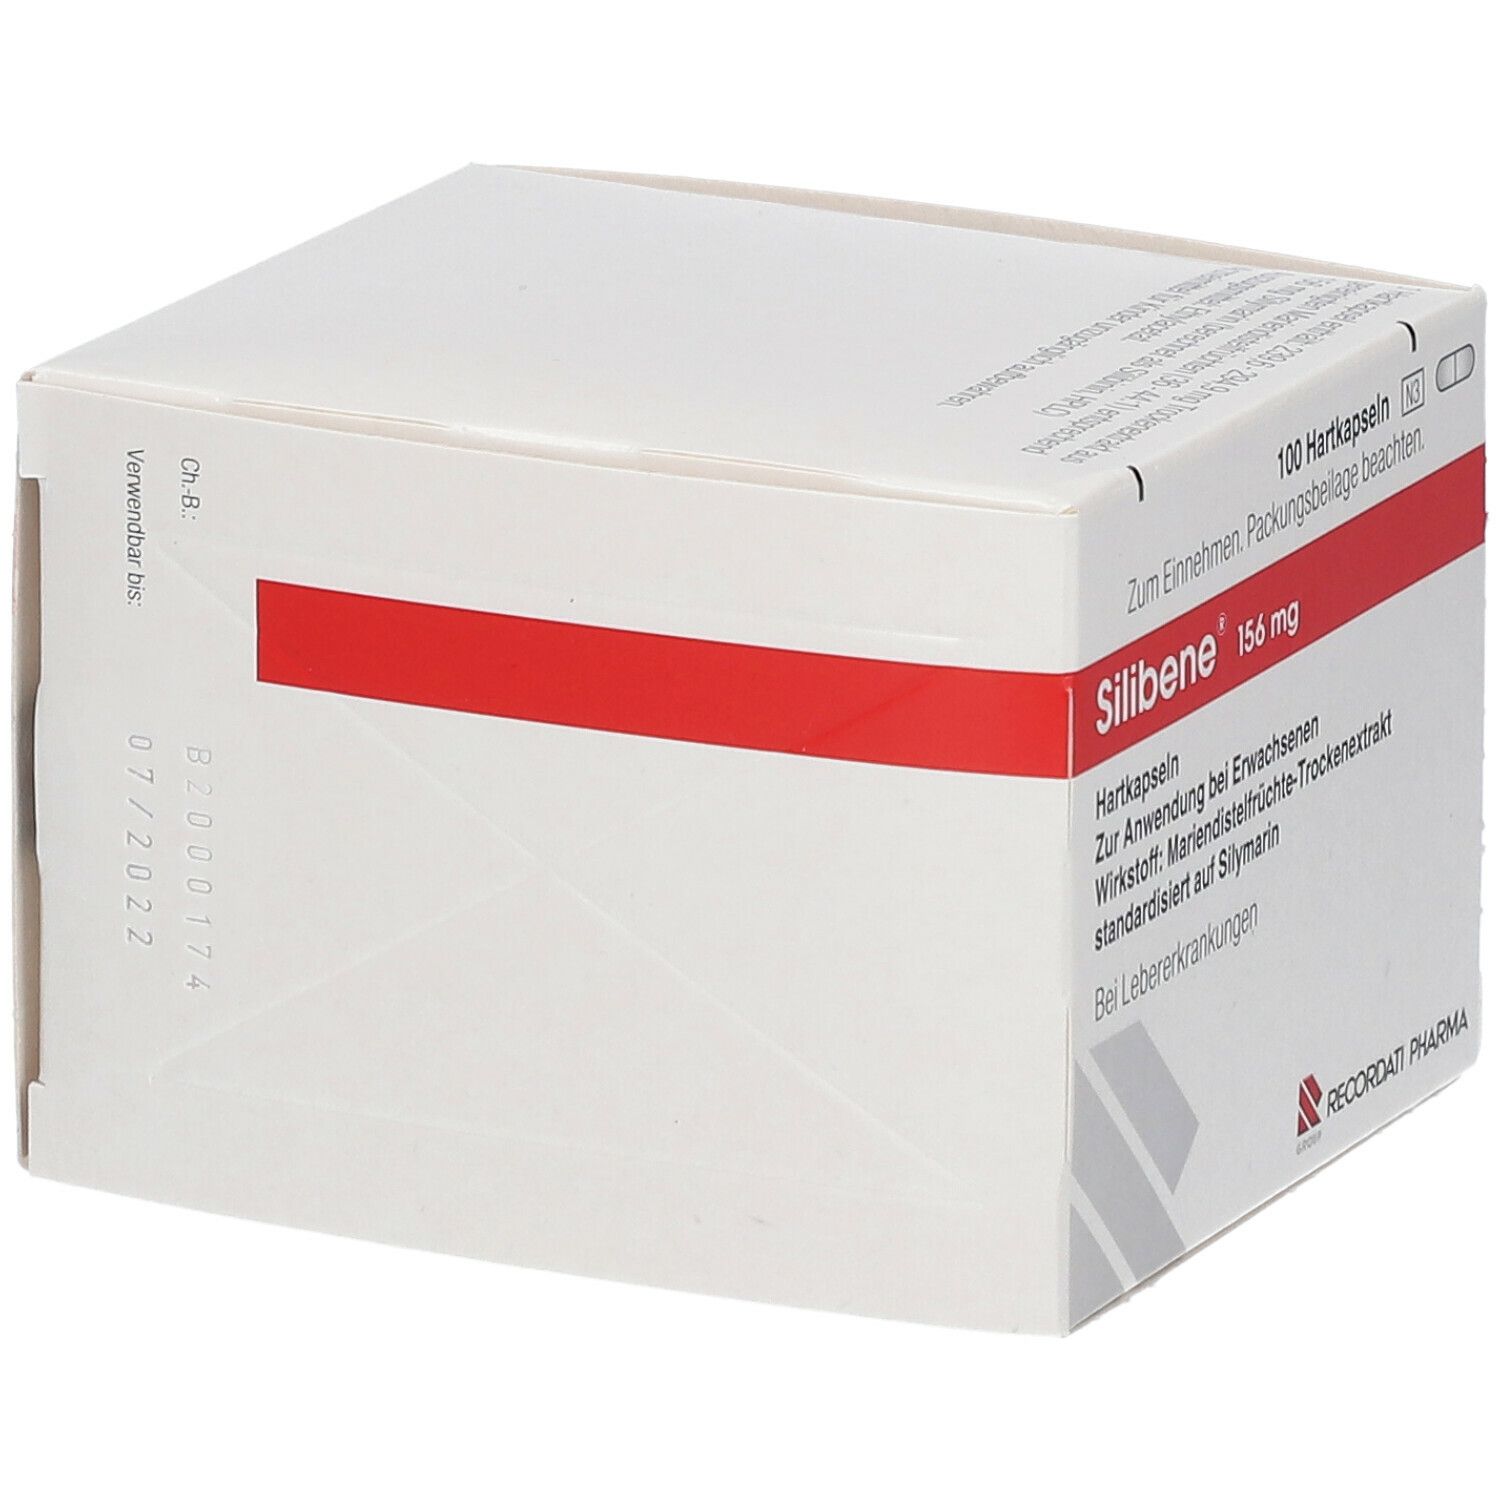 Silibene® 156 mg Kapseln